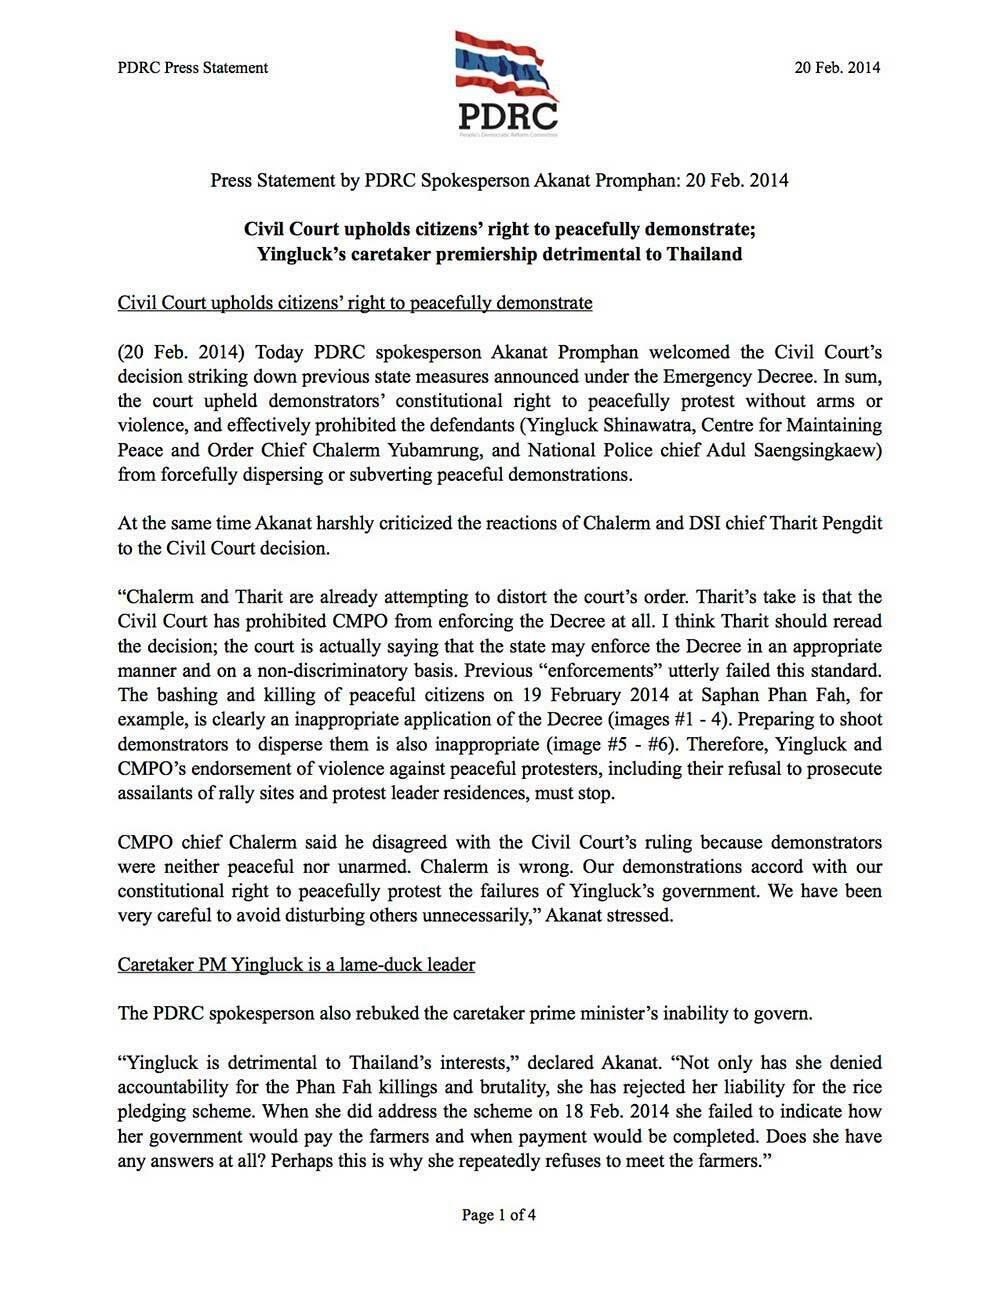 pdrc-press-statement akanat 20-feb-2014 final